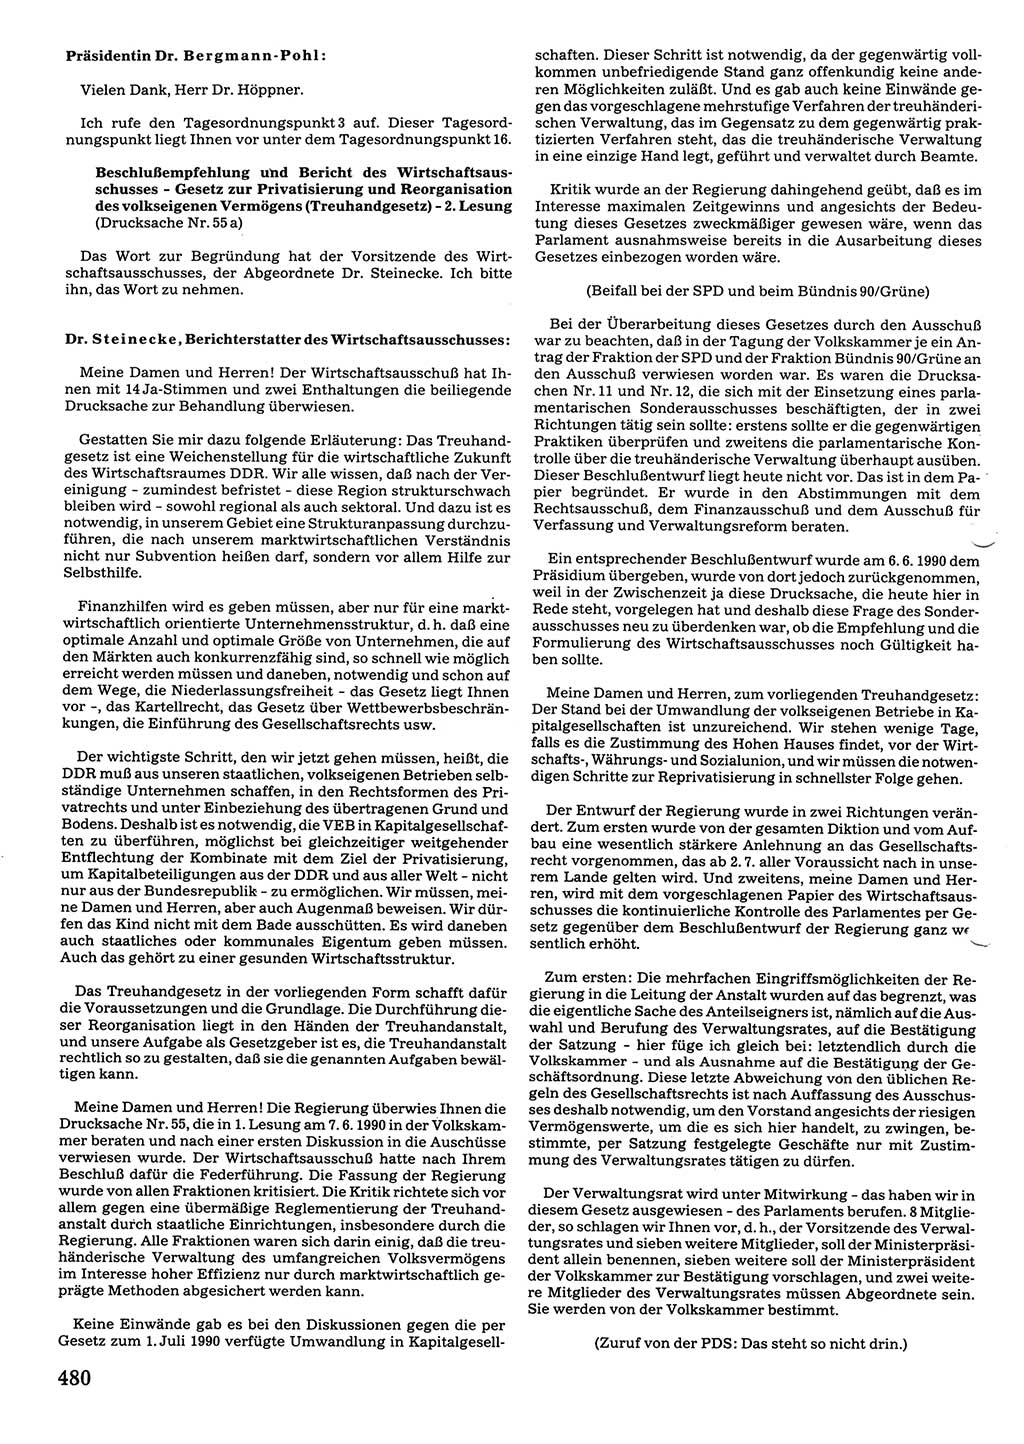 Tagungen der Volkskammer (VK) der Deutschen Demokratischen Republik (DDR), 10. Wahlperiode 1990, Seite 480 (VK. DDR 10. WP. 1990, Prot. Tg. 1-38, 5.4.-2.10.1990, S. 480)